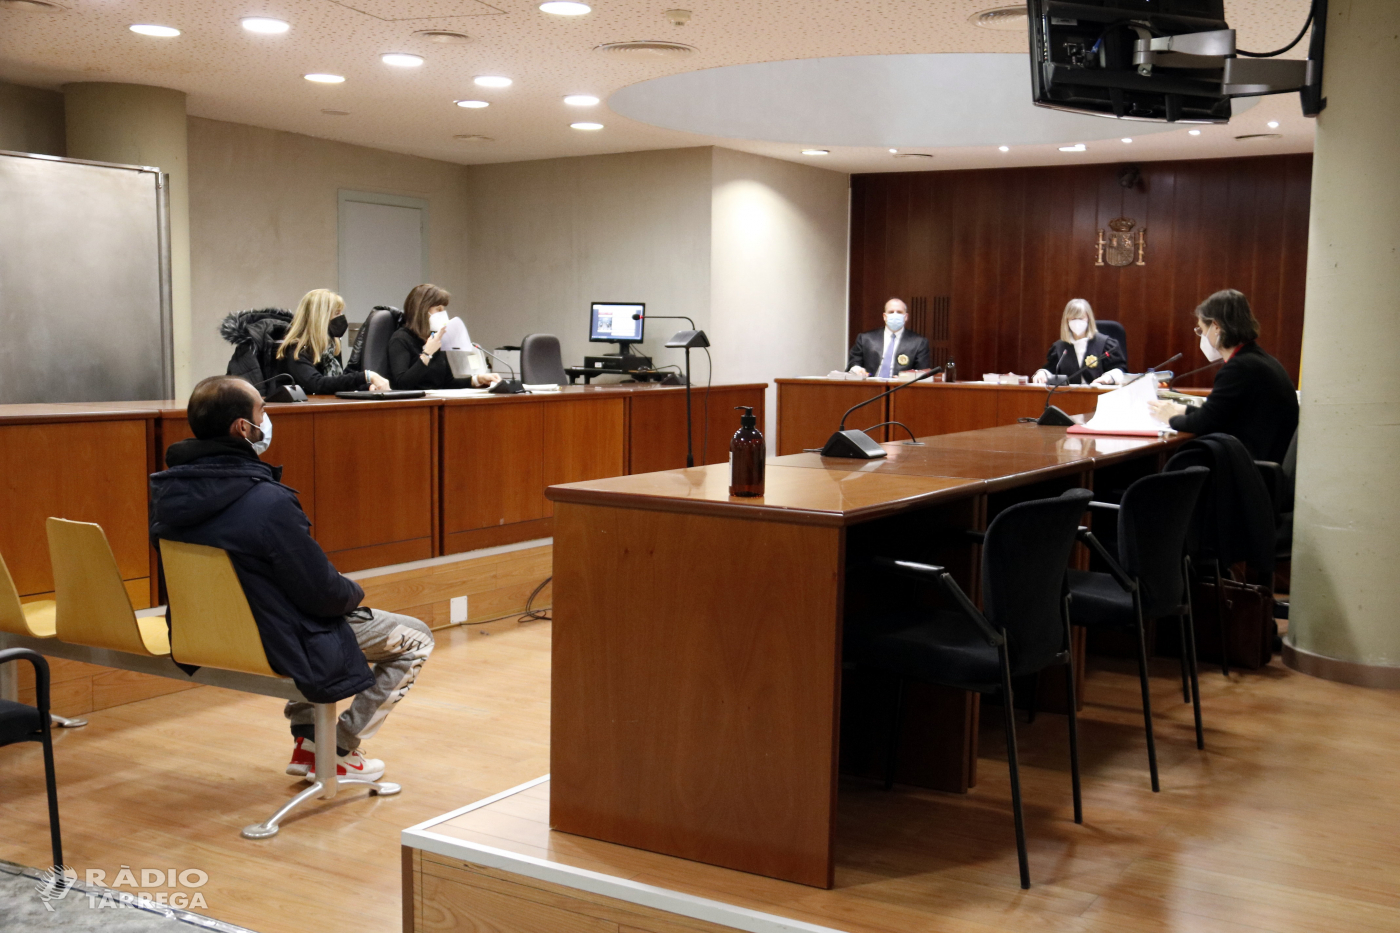 Es doblen les violacions en un any a la demarcació de Lleida i passen de 21 a 42